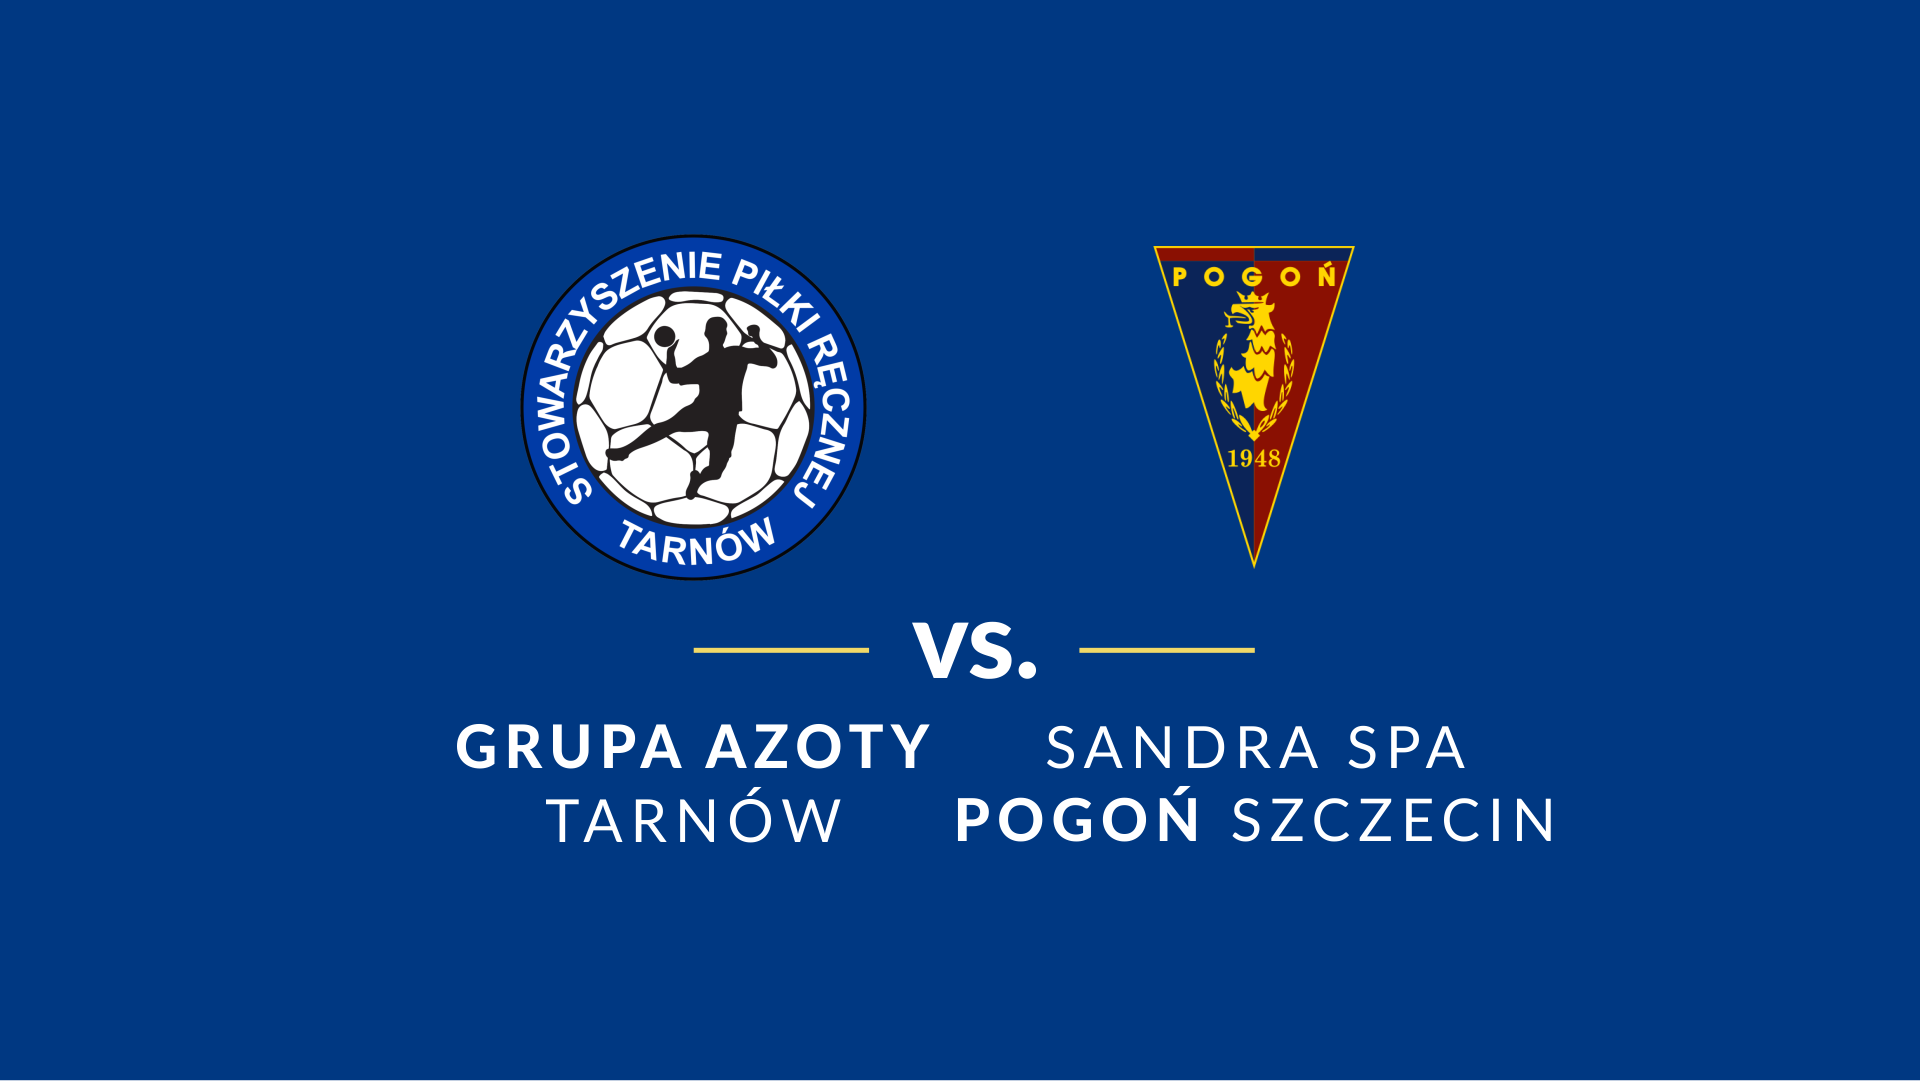 baner - logotypy Grupa Azoty Tarnów i Pogoń Szczecin